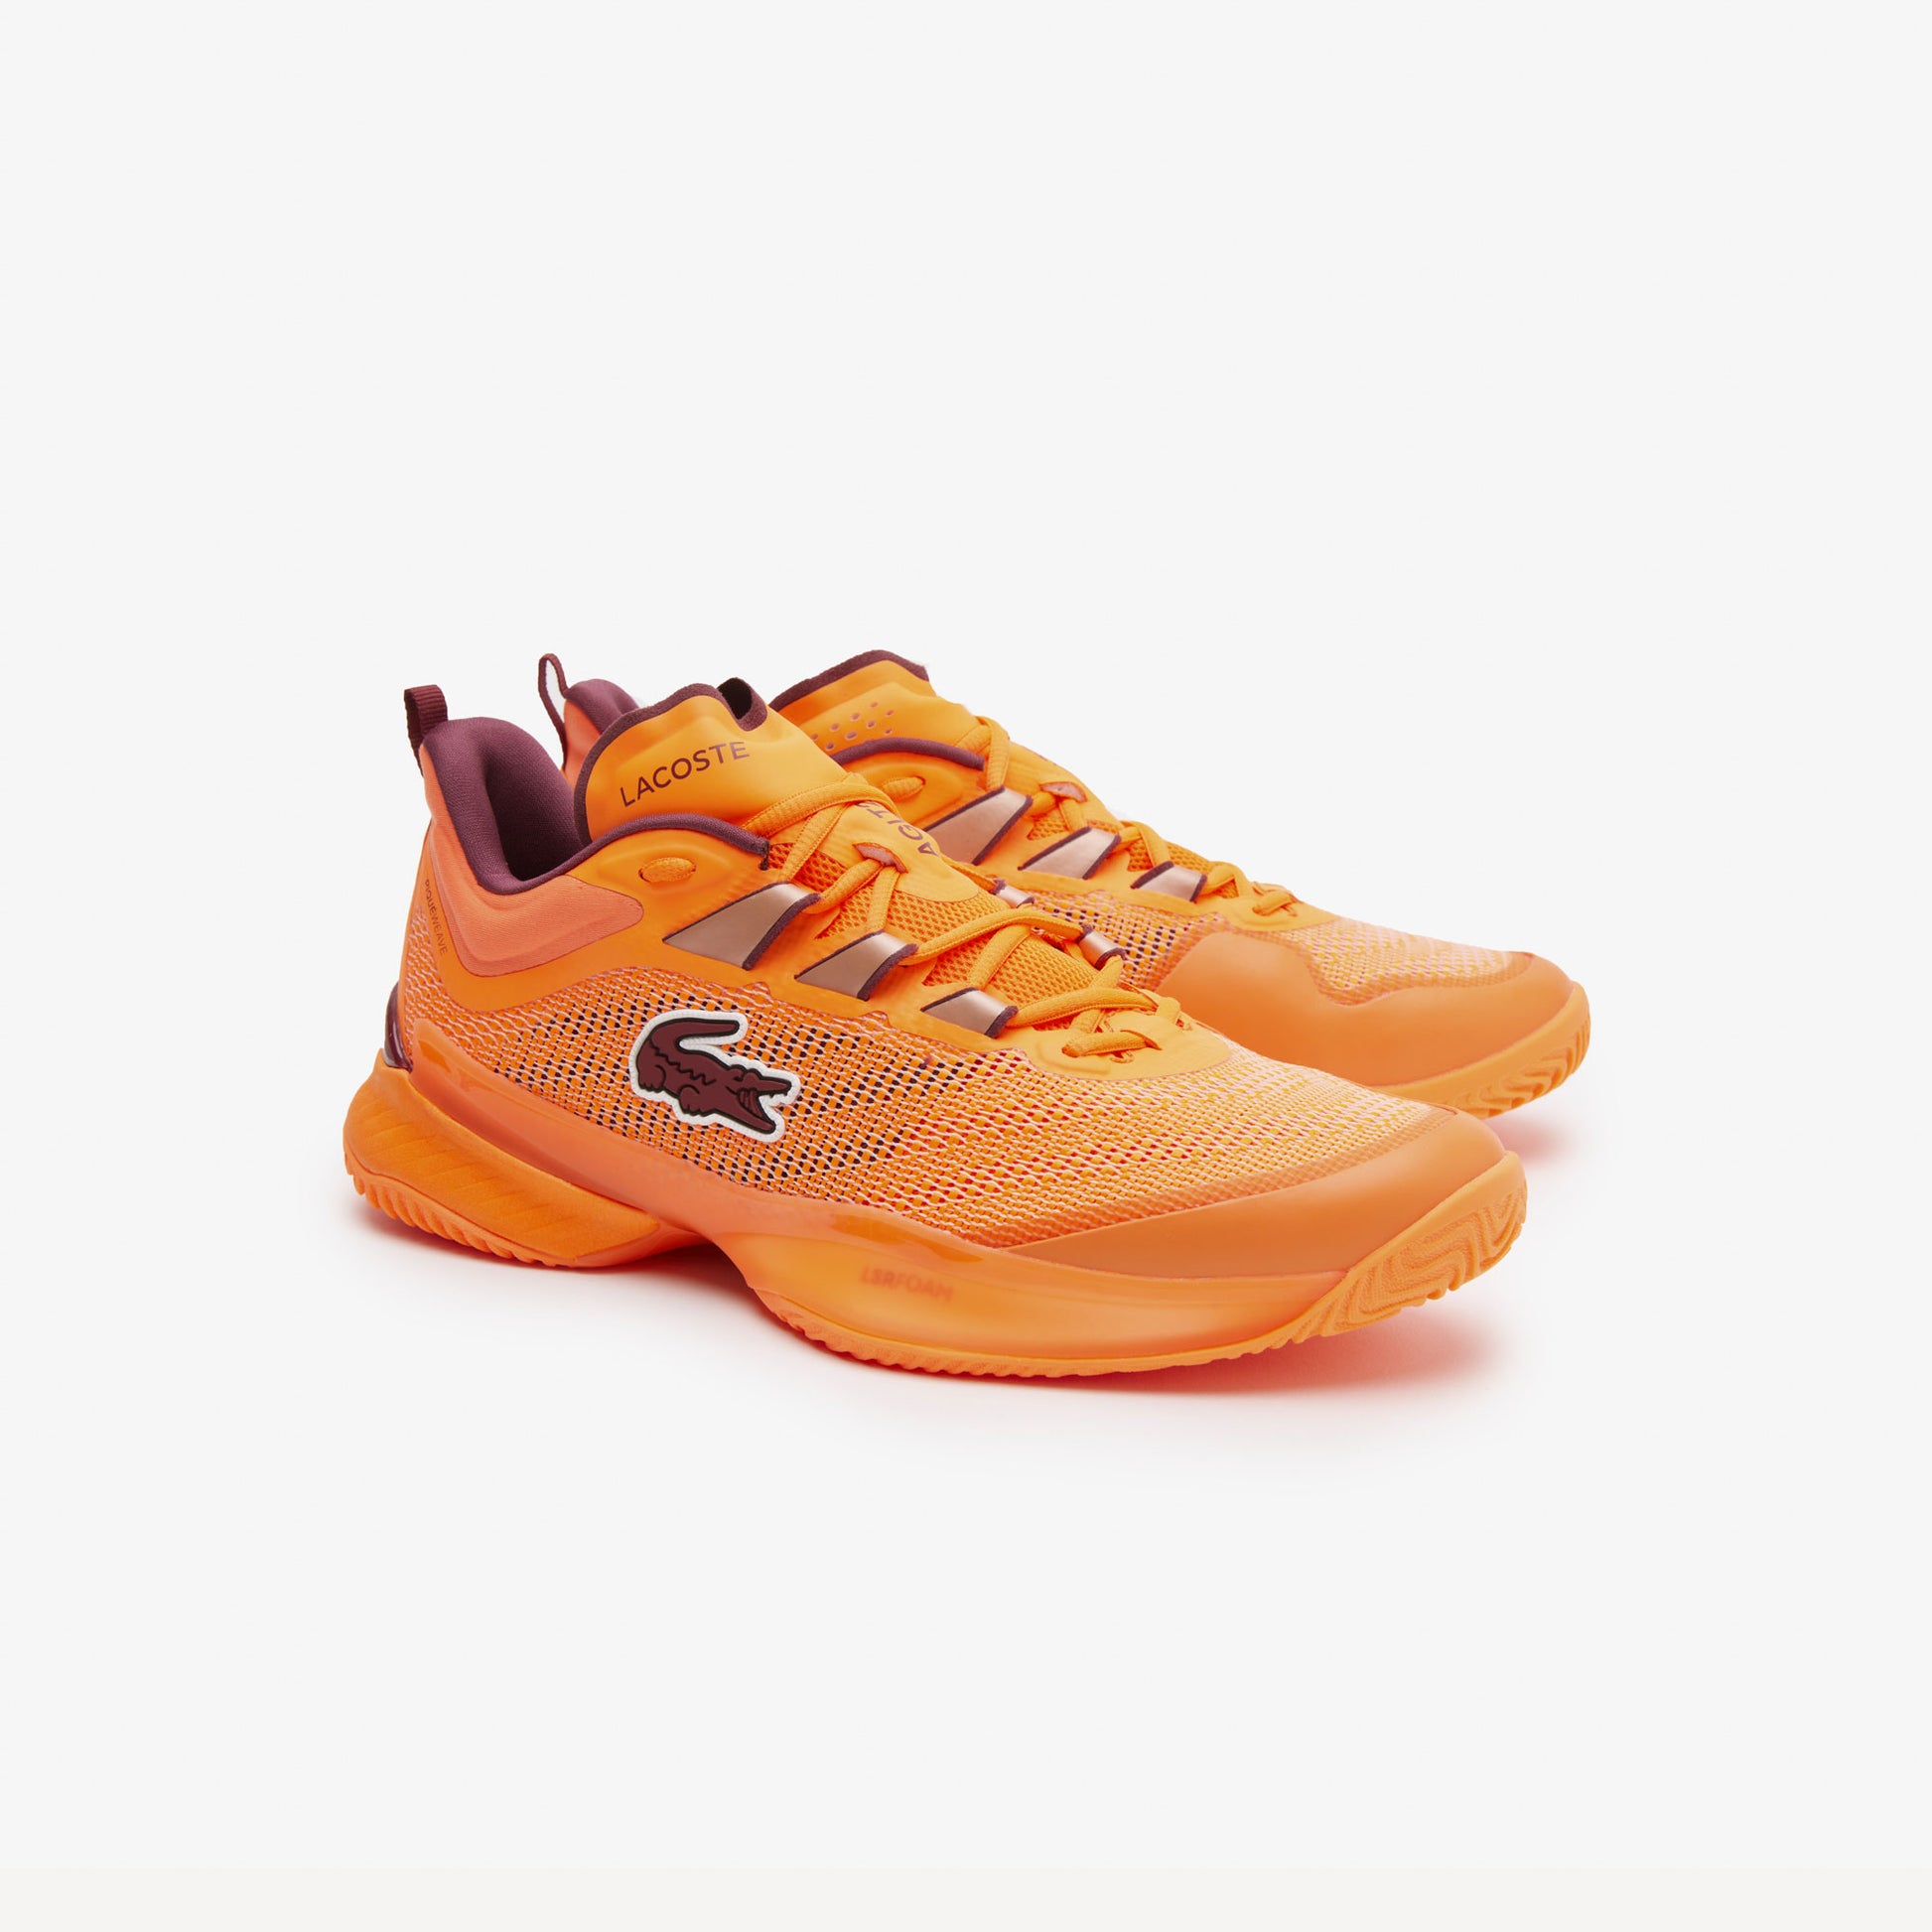 Lacoste AG-LT23 Ultra Men's Tennis Shoes Orange (2)